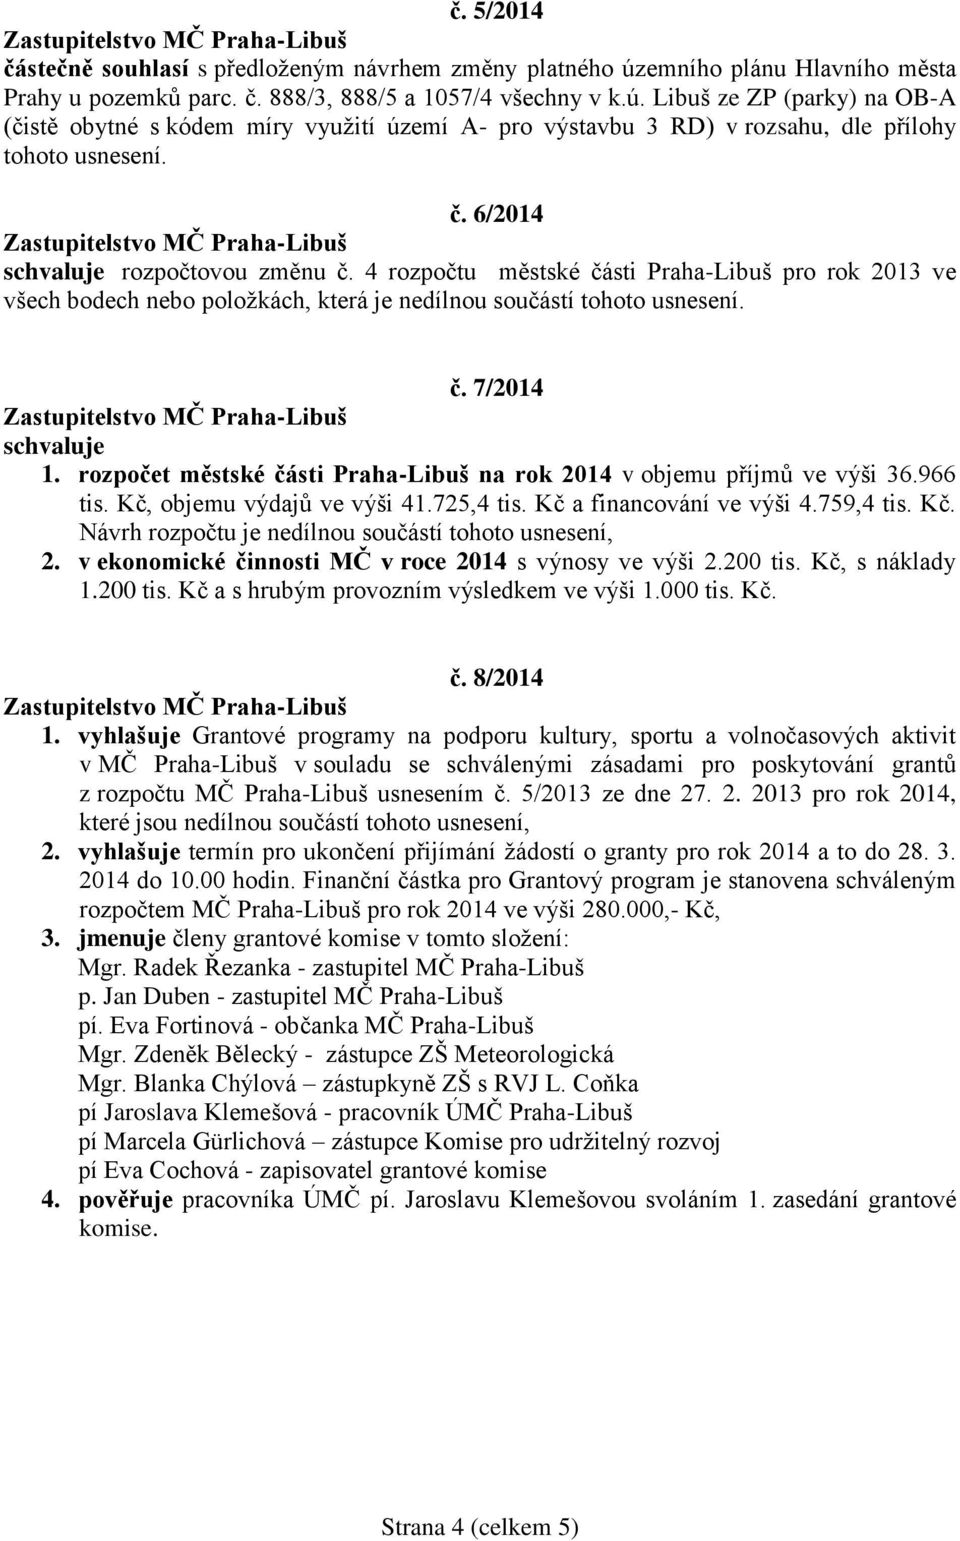 rozpočet městské části Praha-Libuš na rok 2014 v objemu příjmů ve výši 36.966 tis. Kč, objemu výdajů ve výši 41.725,4 tis. Kč a financování ve výši 4.759,4 tis. Kč. Návrh rozpočtu je nedílnou součástí tohoto usnesení, 2.